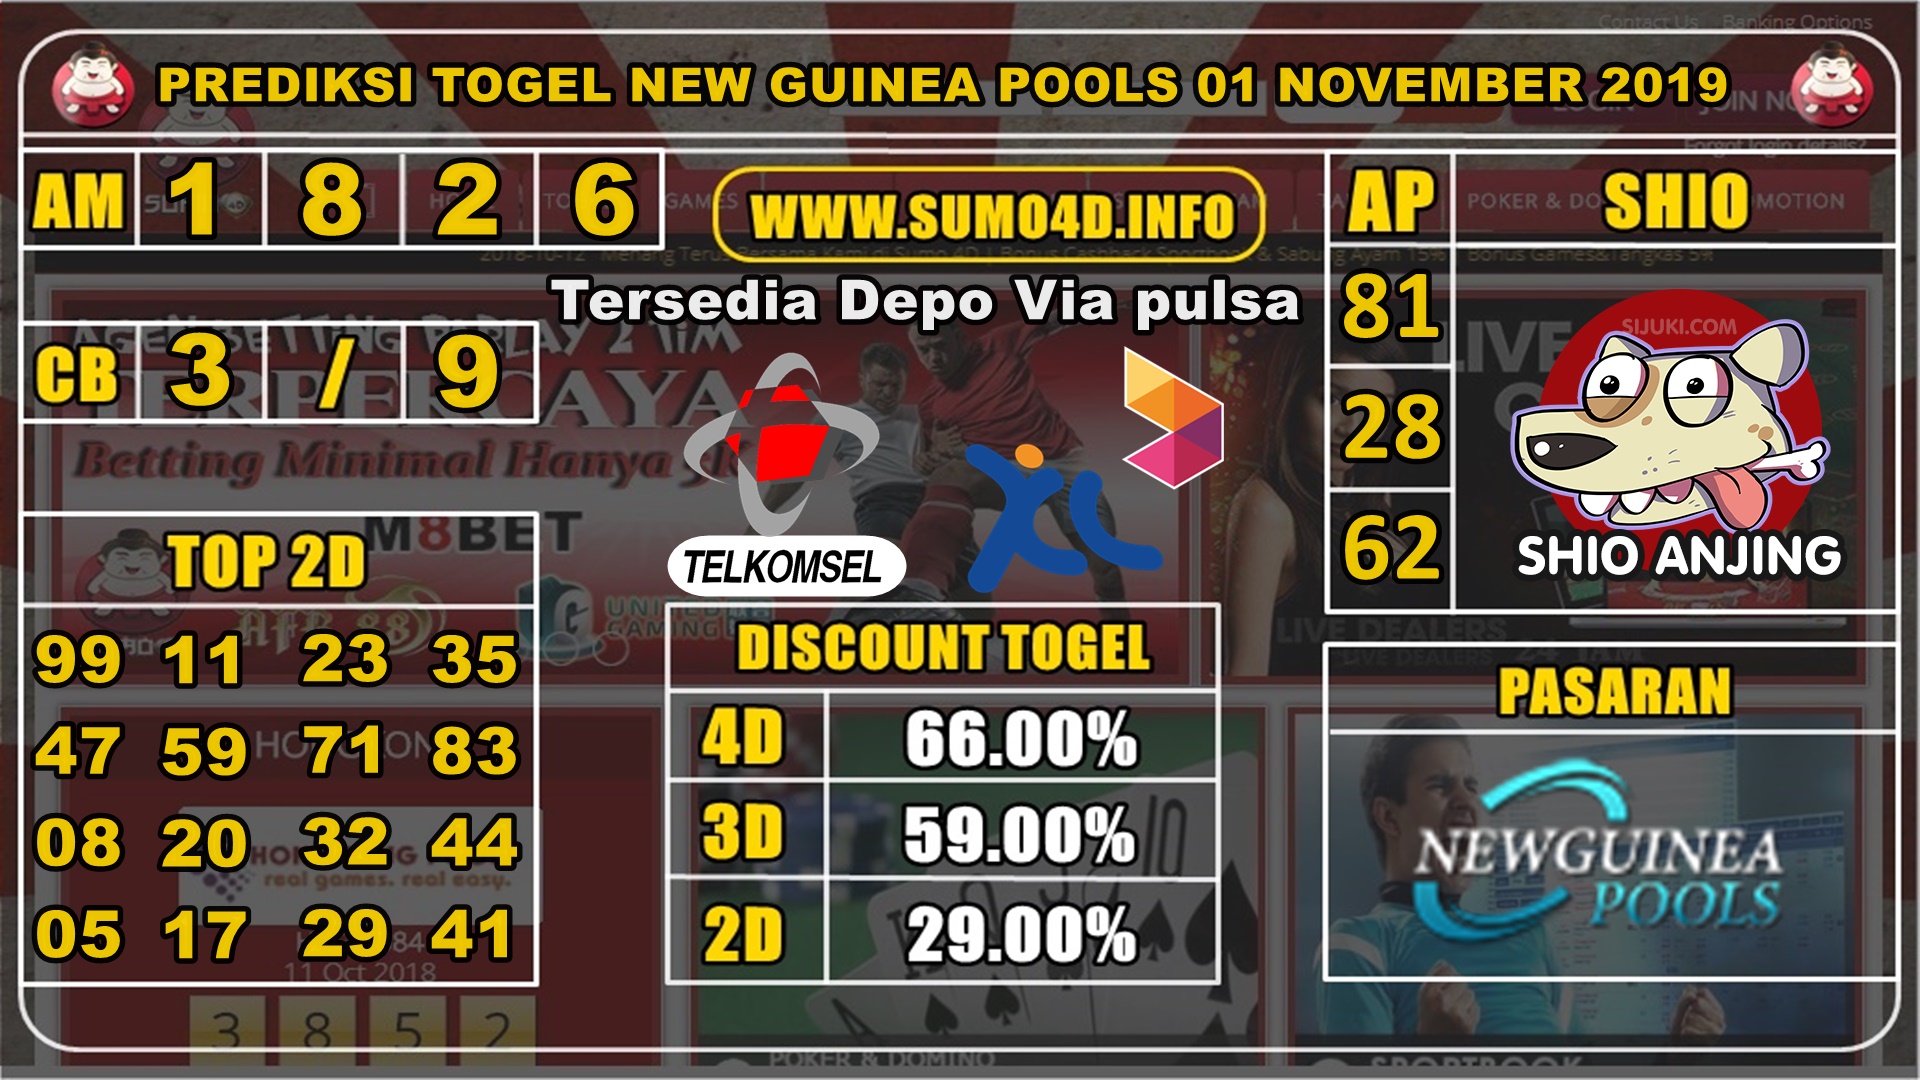 PREDIKSI TOGEL NEW GUINEA POOLS 01 NOVEMBER 2019